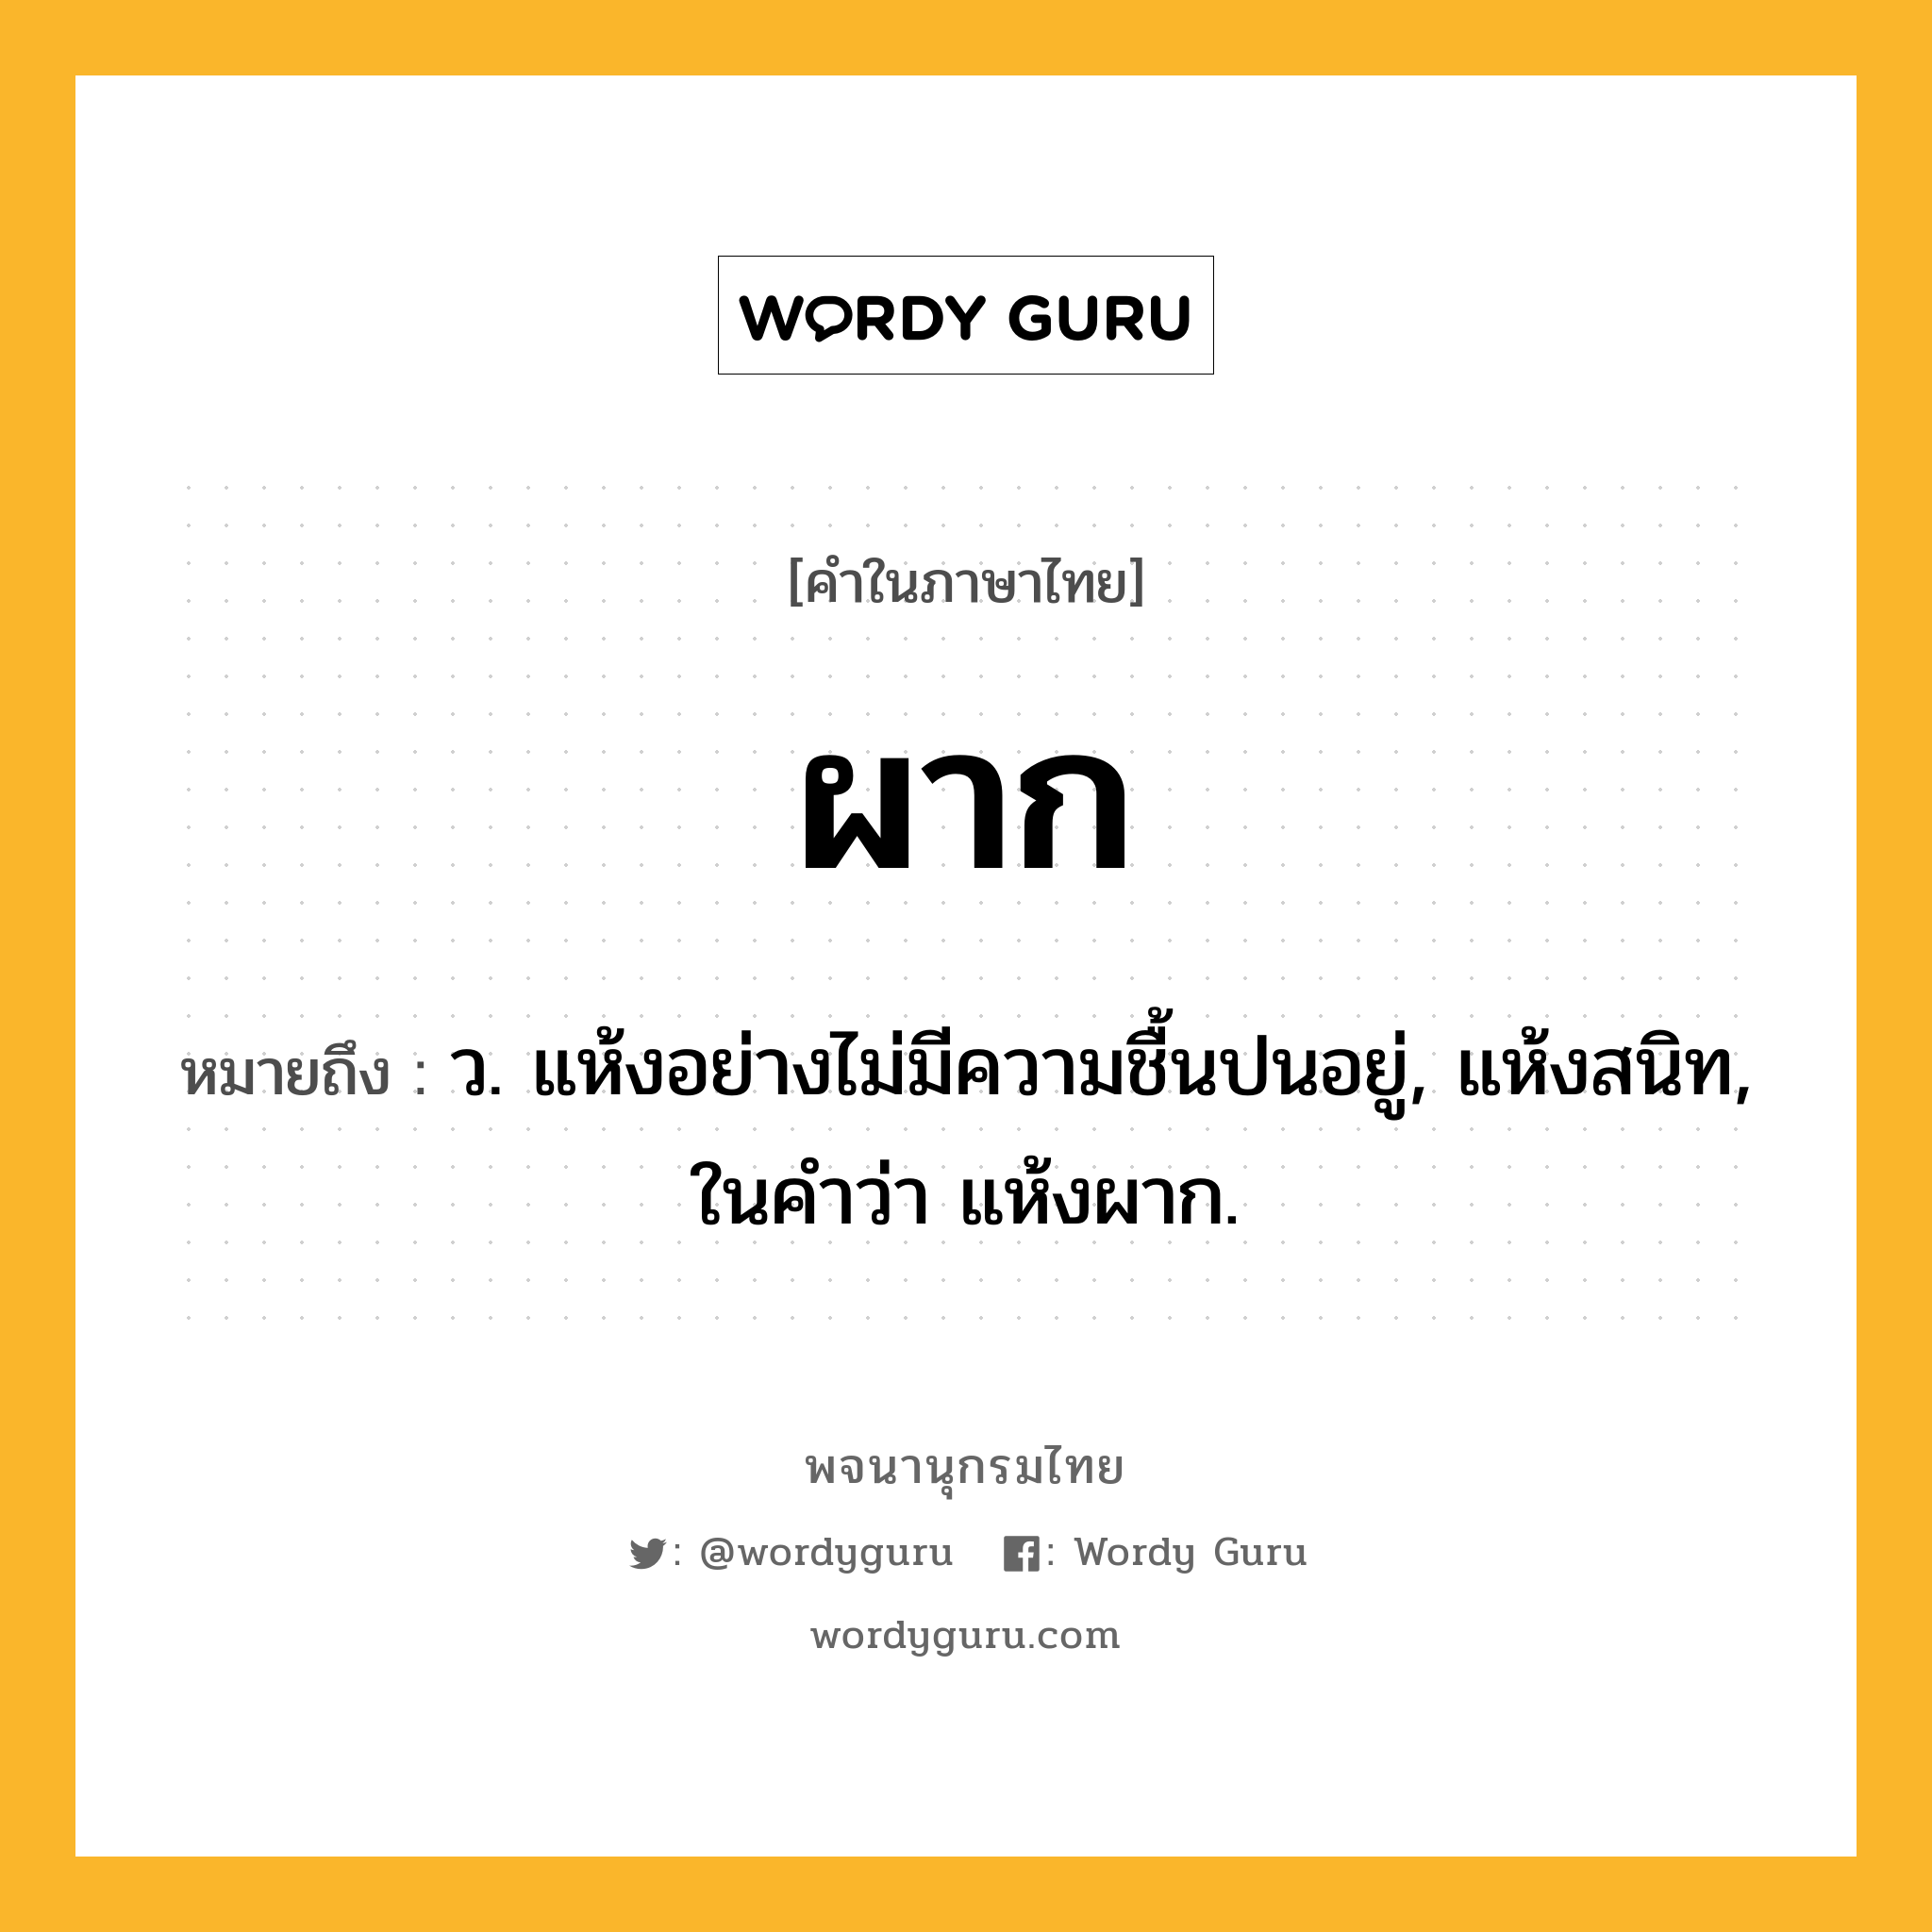 ผาก ความหมาย หมายถึงอะไร?, คำในภาษาไทย ผาก หมายถึง ว. แห้งอย่างไม่มีความชื้นปนอยู่, แห้งสนิท, ในคำว่า แห้งผาก.